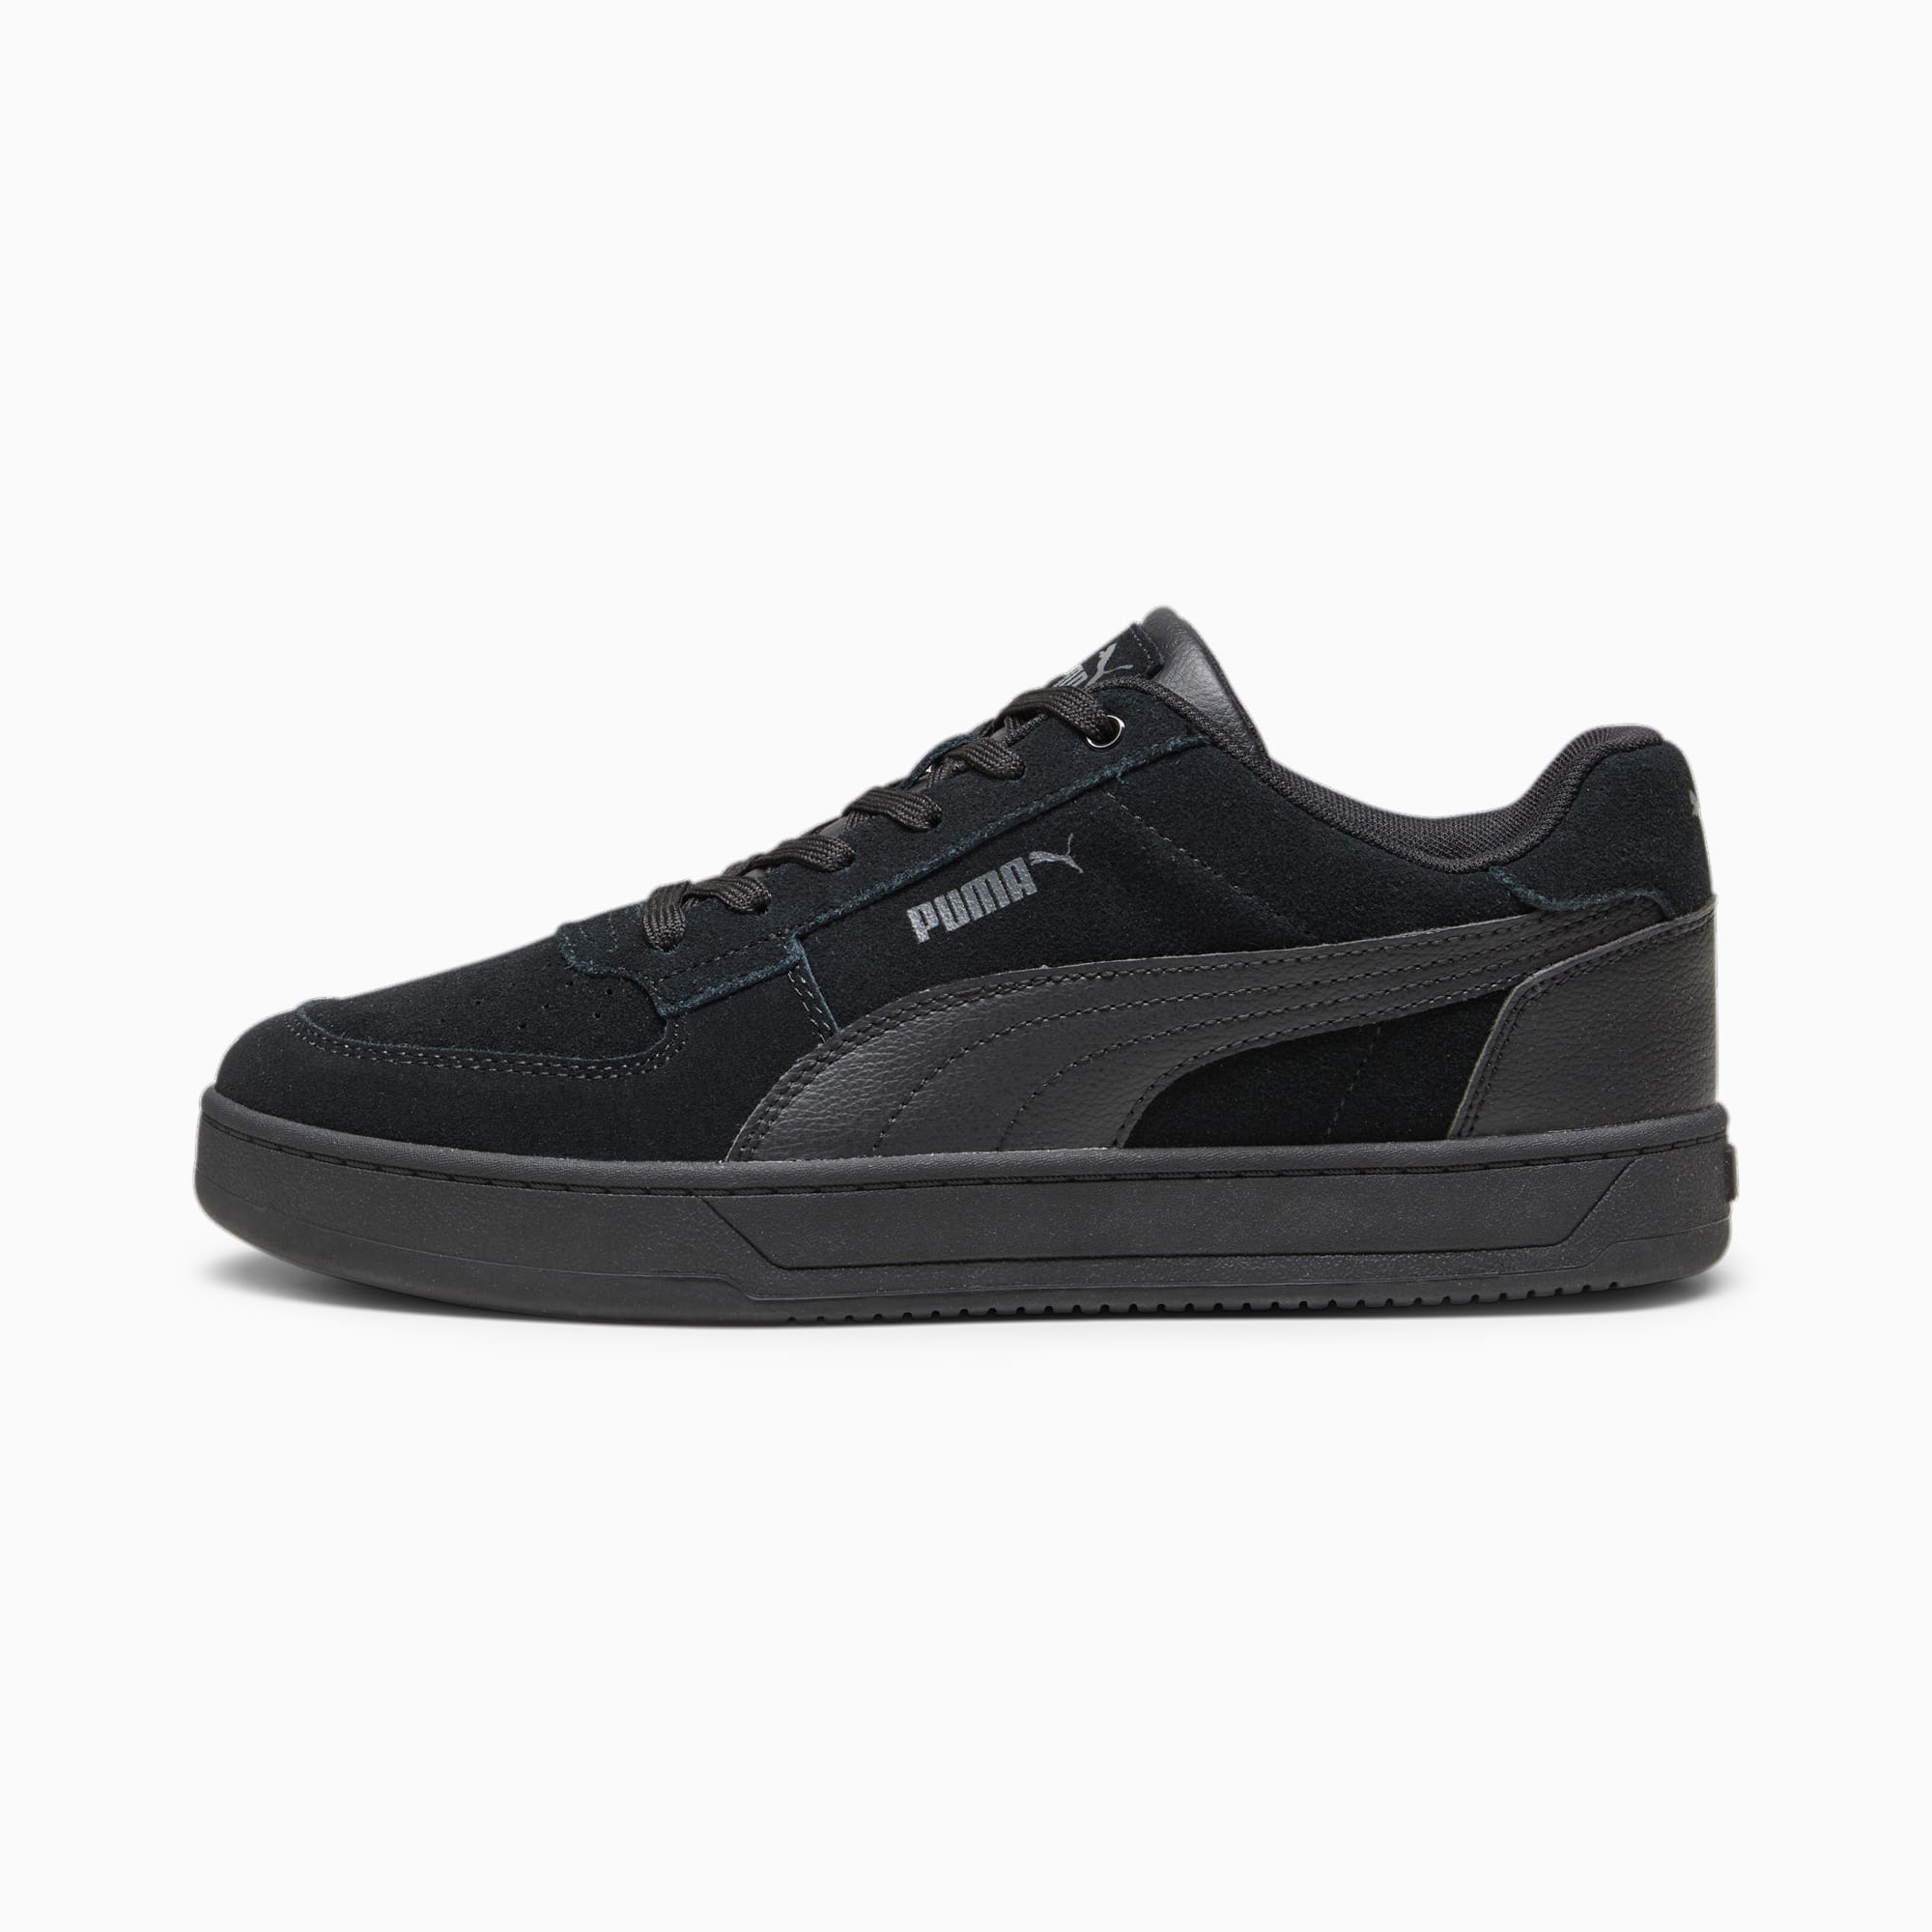 Puma Caven 2.0 Wip Men's Shoes Black 392332 - 02 - Puma-select